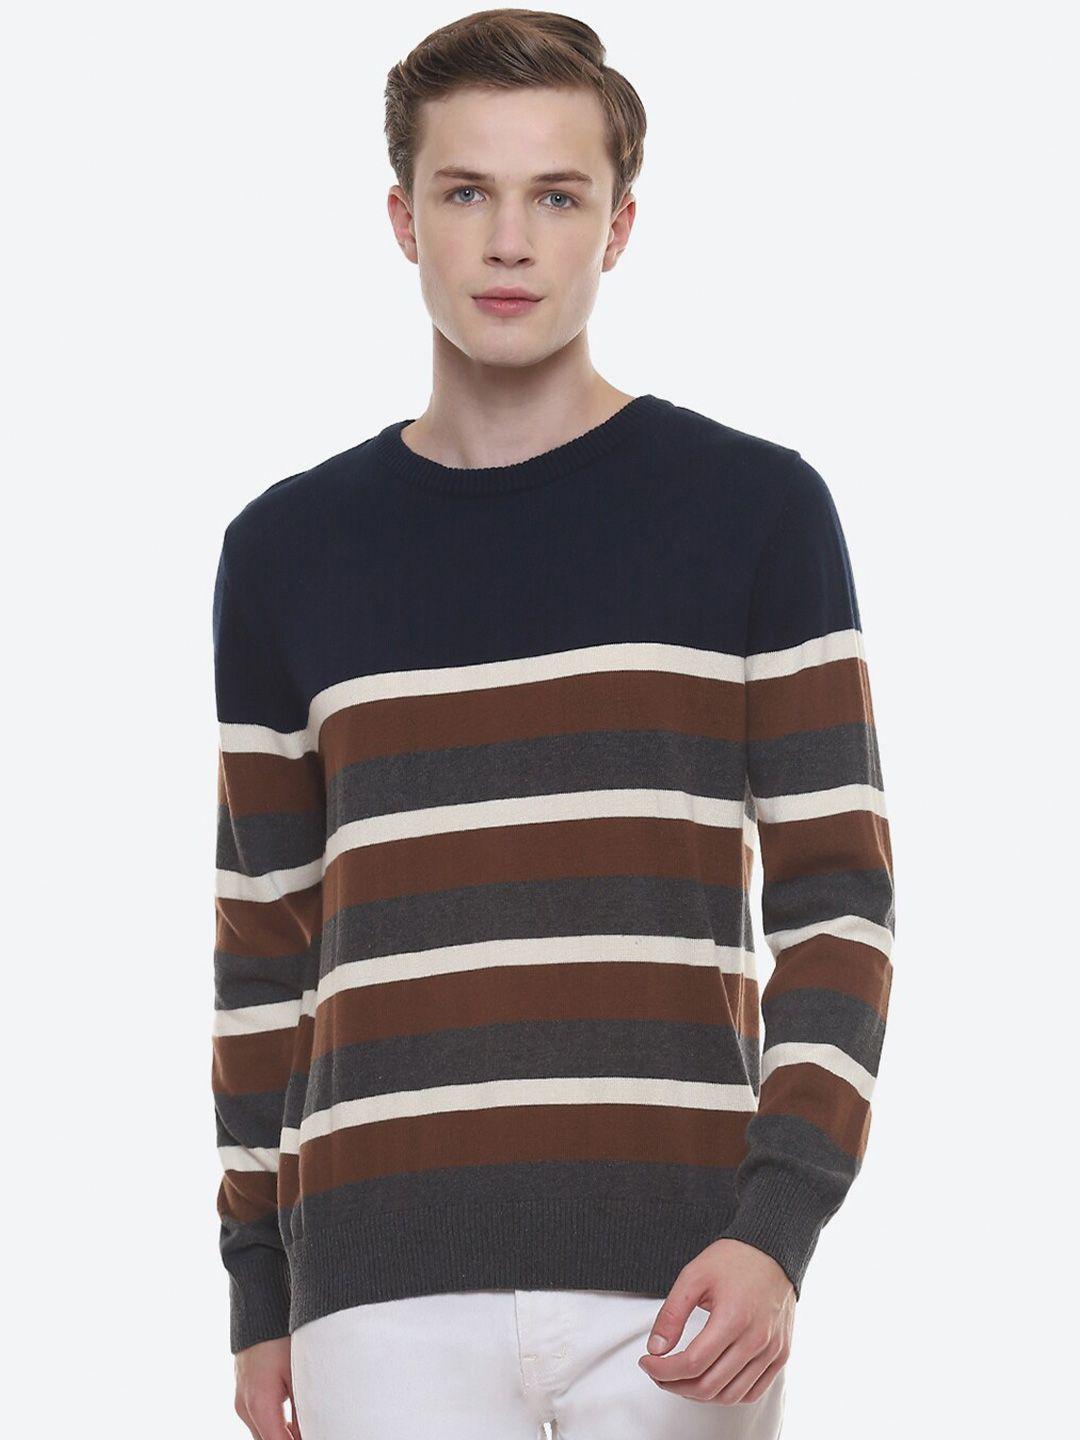 2bme colourblocked pullover cotton sweater